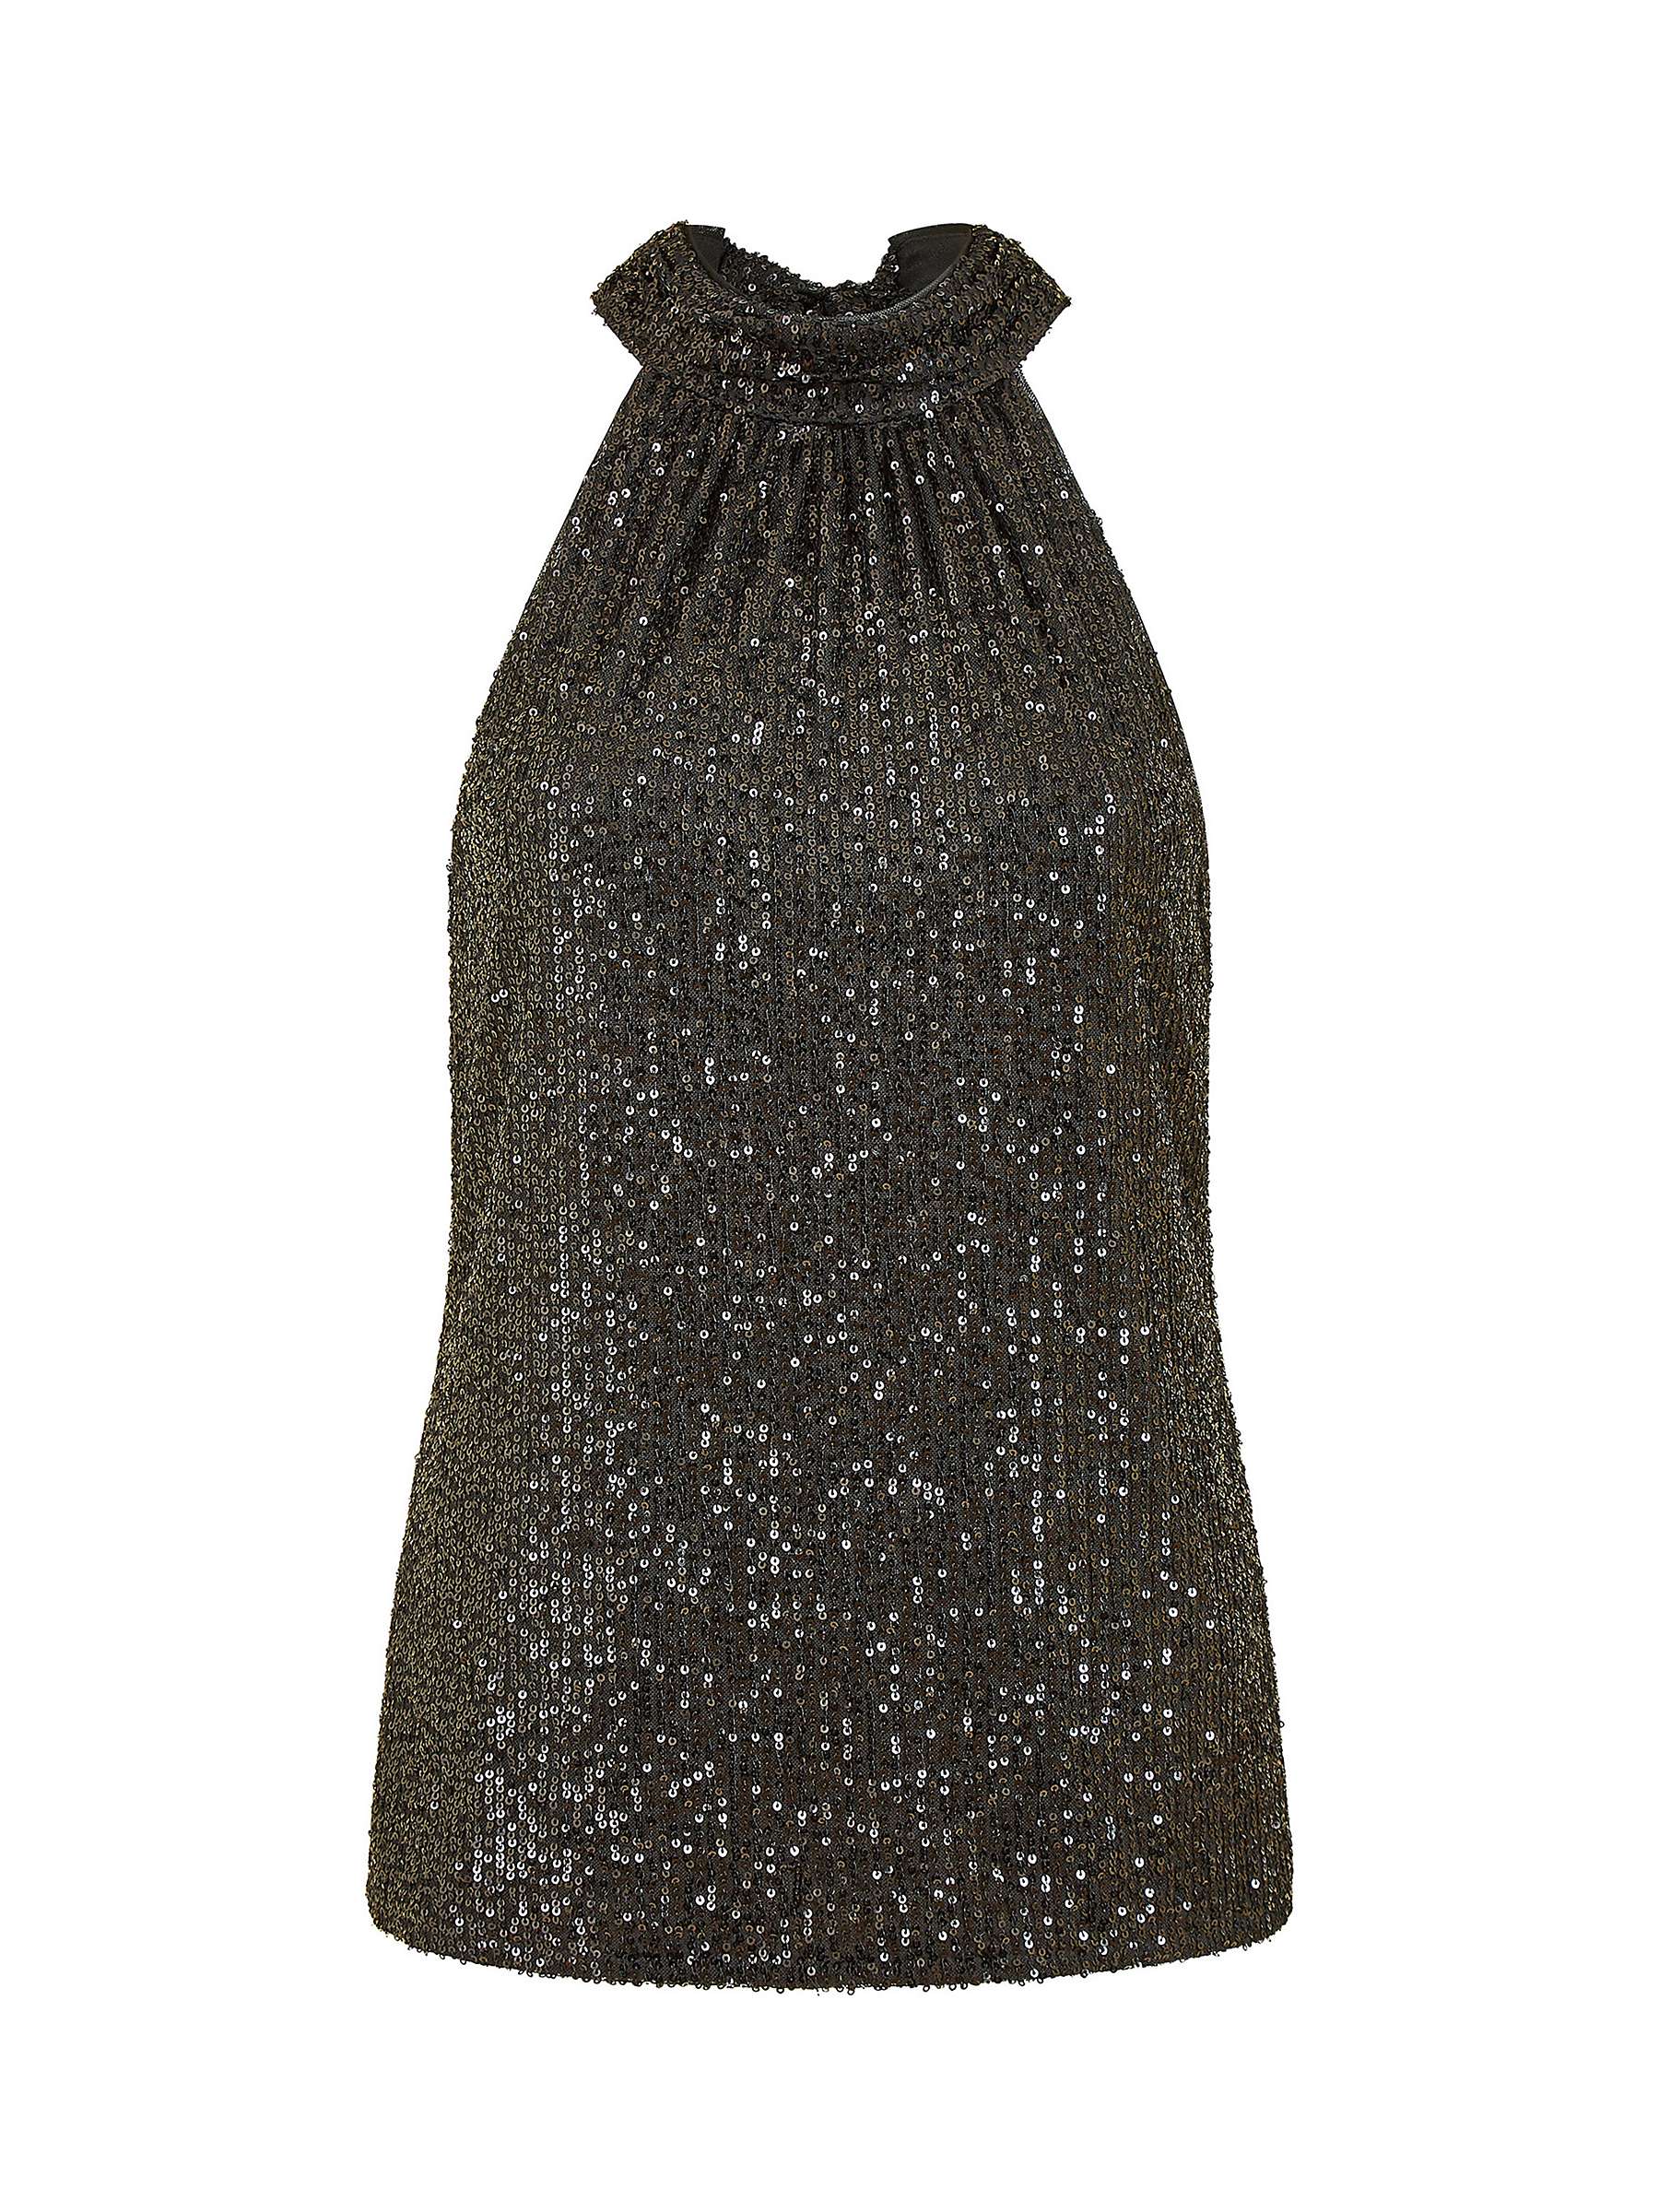 Buy Mela London Sequin Halter Neck Top, Black Online at johnlewis.com